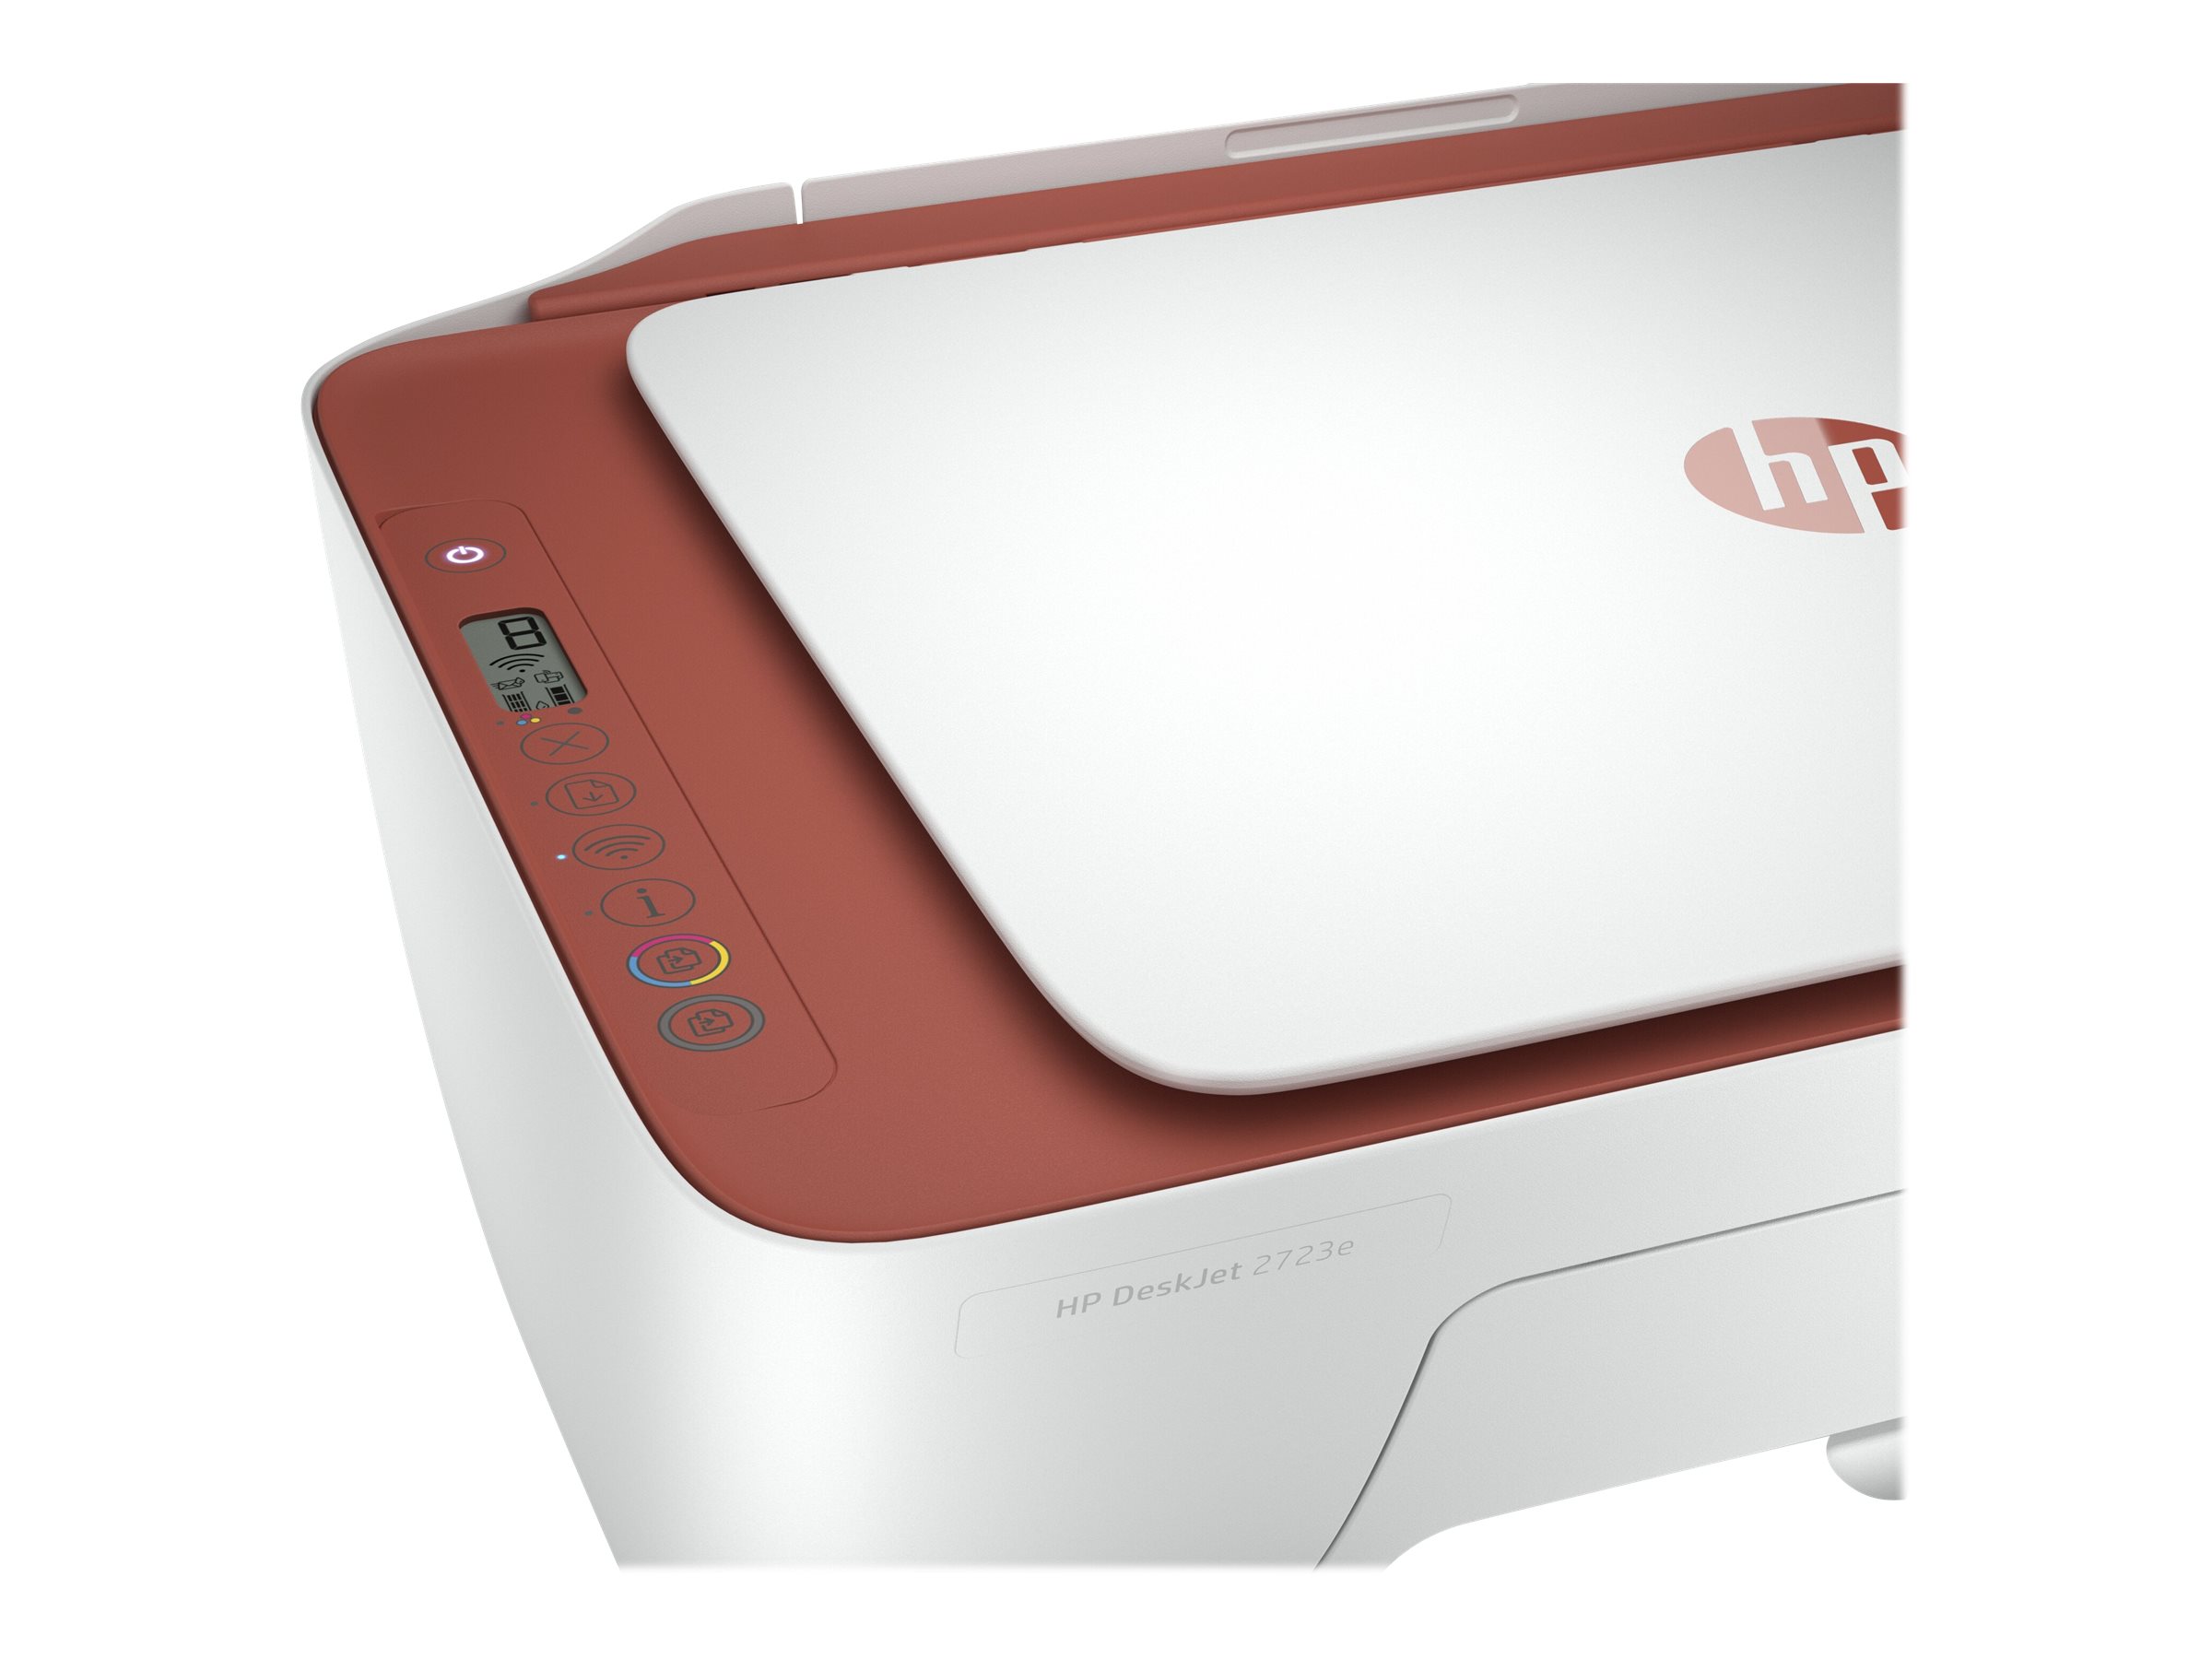 HP Deskjet 2723e All-in-One - Imprimante multifonctions - couleur - jet d'encre - 216 x 297 mm (original) - A4/Legal (support) - jusqu'à 6 ppm (copie) - jusqu'à 7.5 ppm (impression) - 60 feuilles - USB 2.0, Bluetooth, Wi-Fi(n) - terre cuite - Compatibilité HP Instant Ink - 26K70B#629 - Imprimantes multifonctions